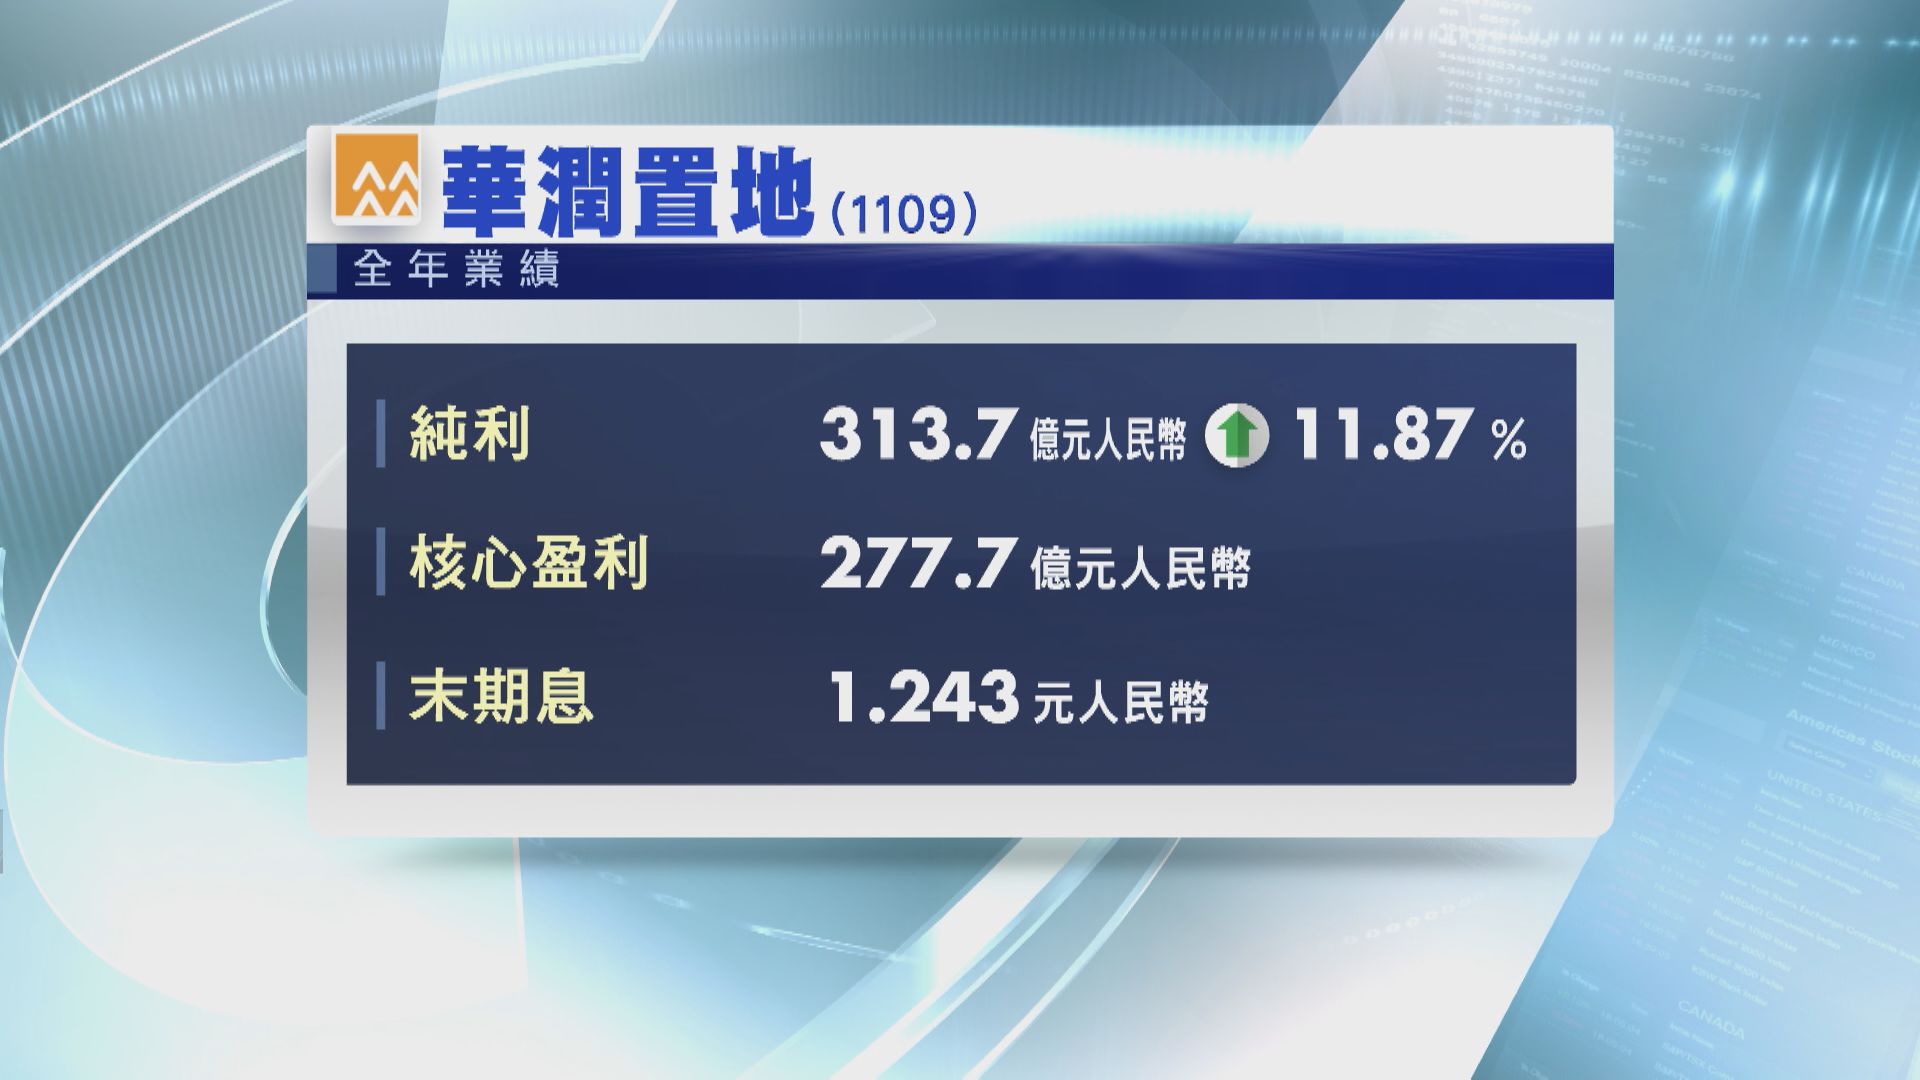 【藍籌業績】潤地去年核心盈利僅增3% 遜預期